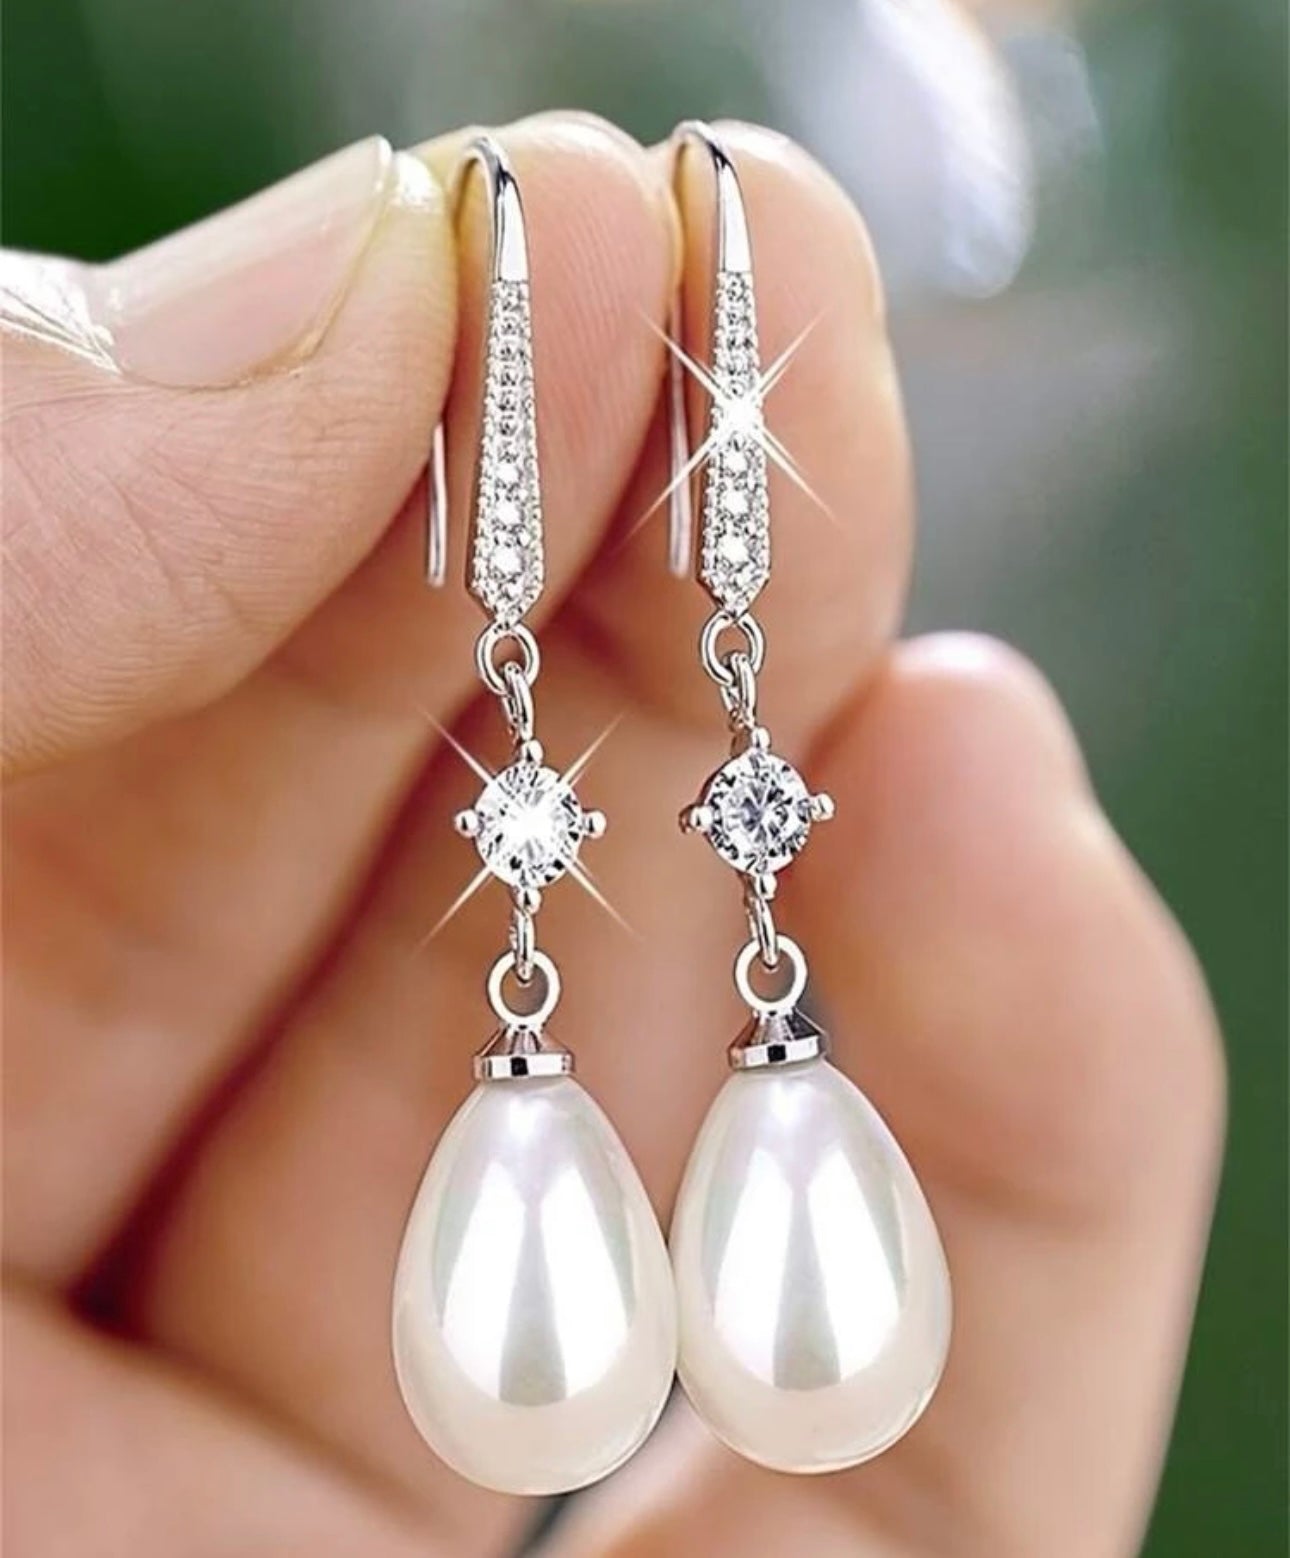 Pearl tear drop earrings